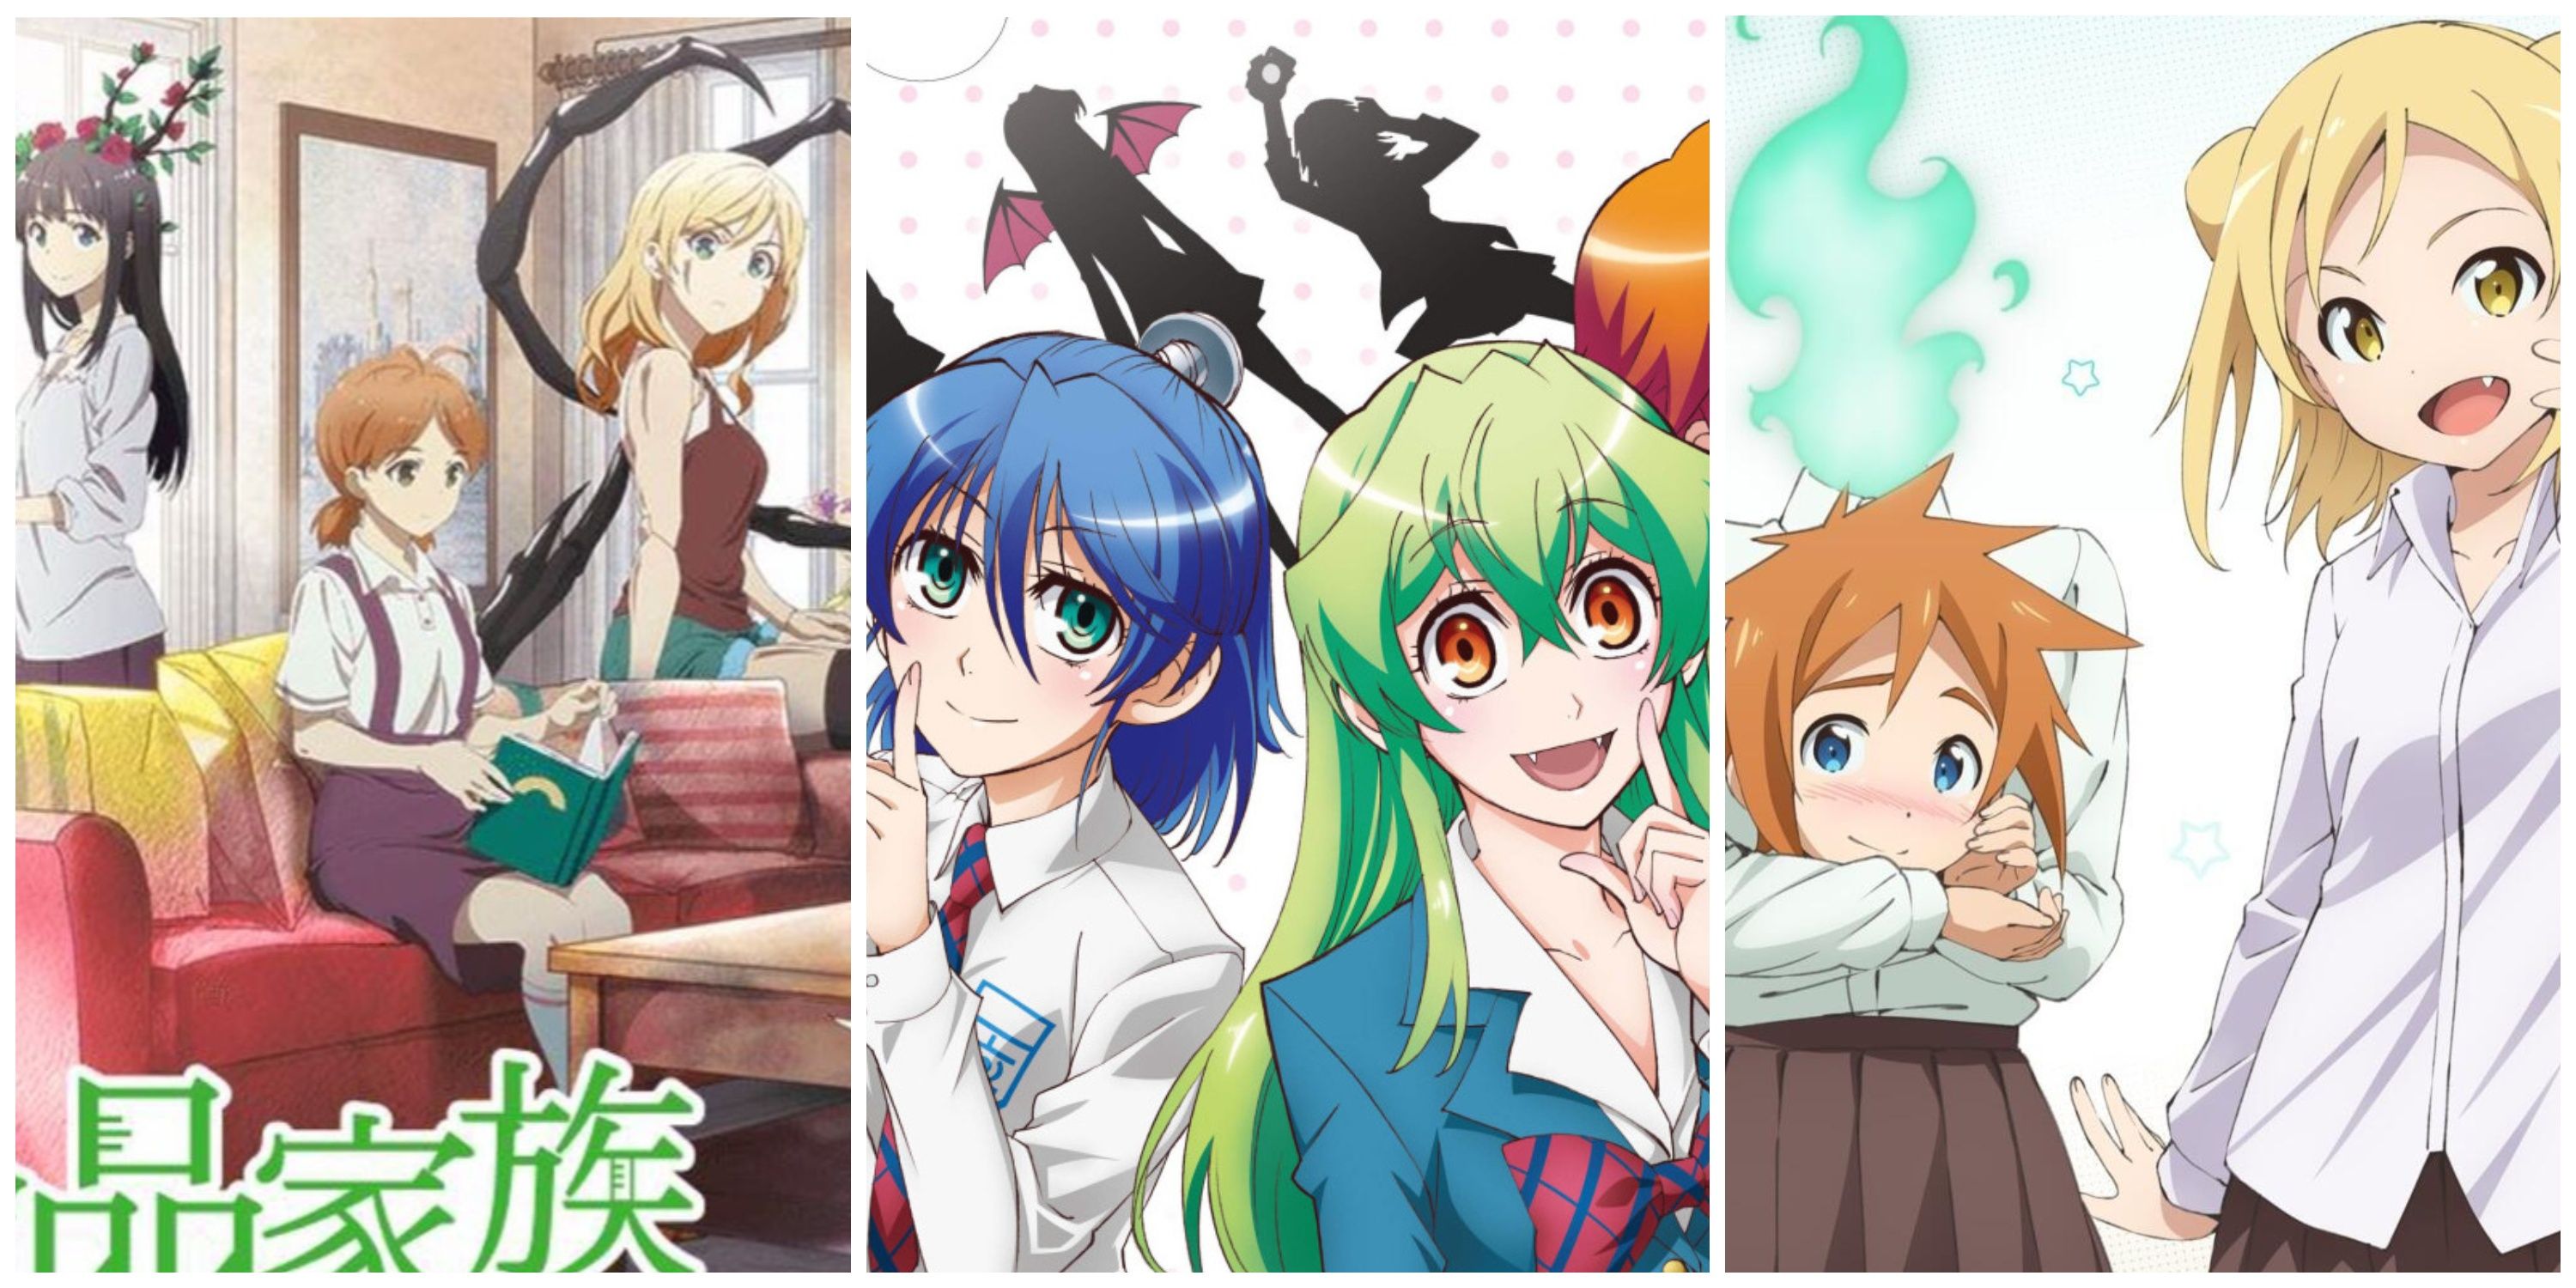 Monster anime/manga  Anime monsters, Good anime series, Manga